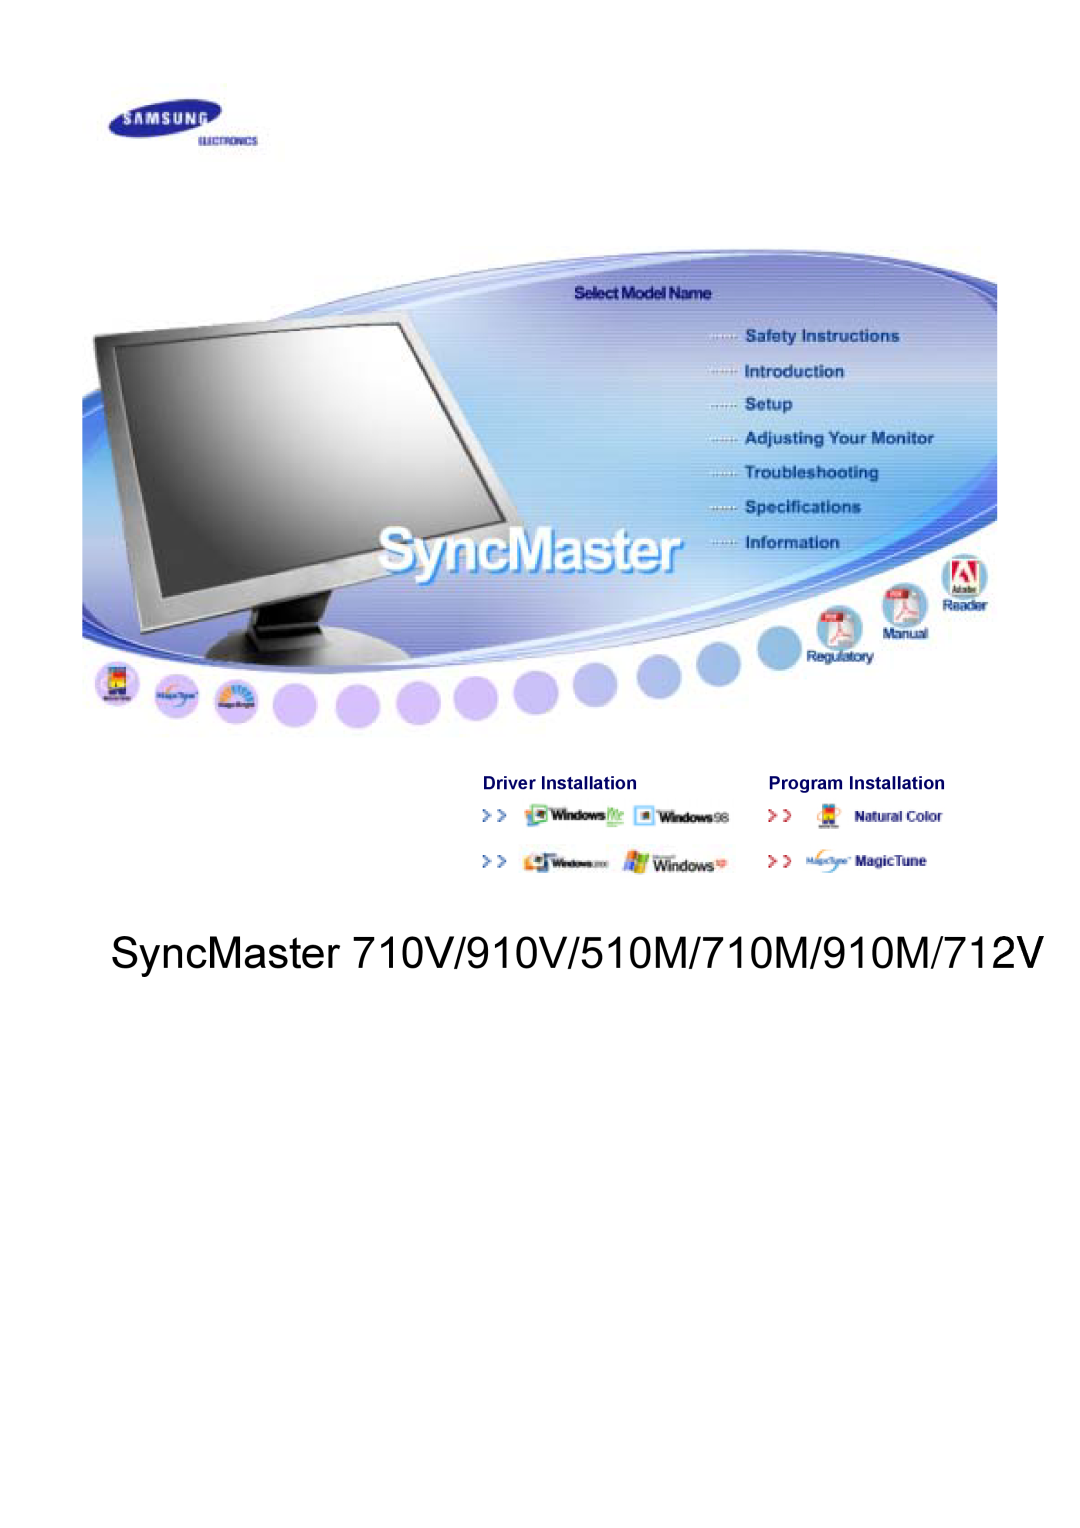 Samsung manual SyncMaster 710V/910V/510M/710M/910M/712V, Driver Installation, Program Installation 